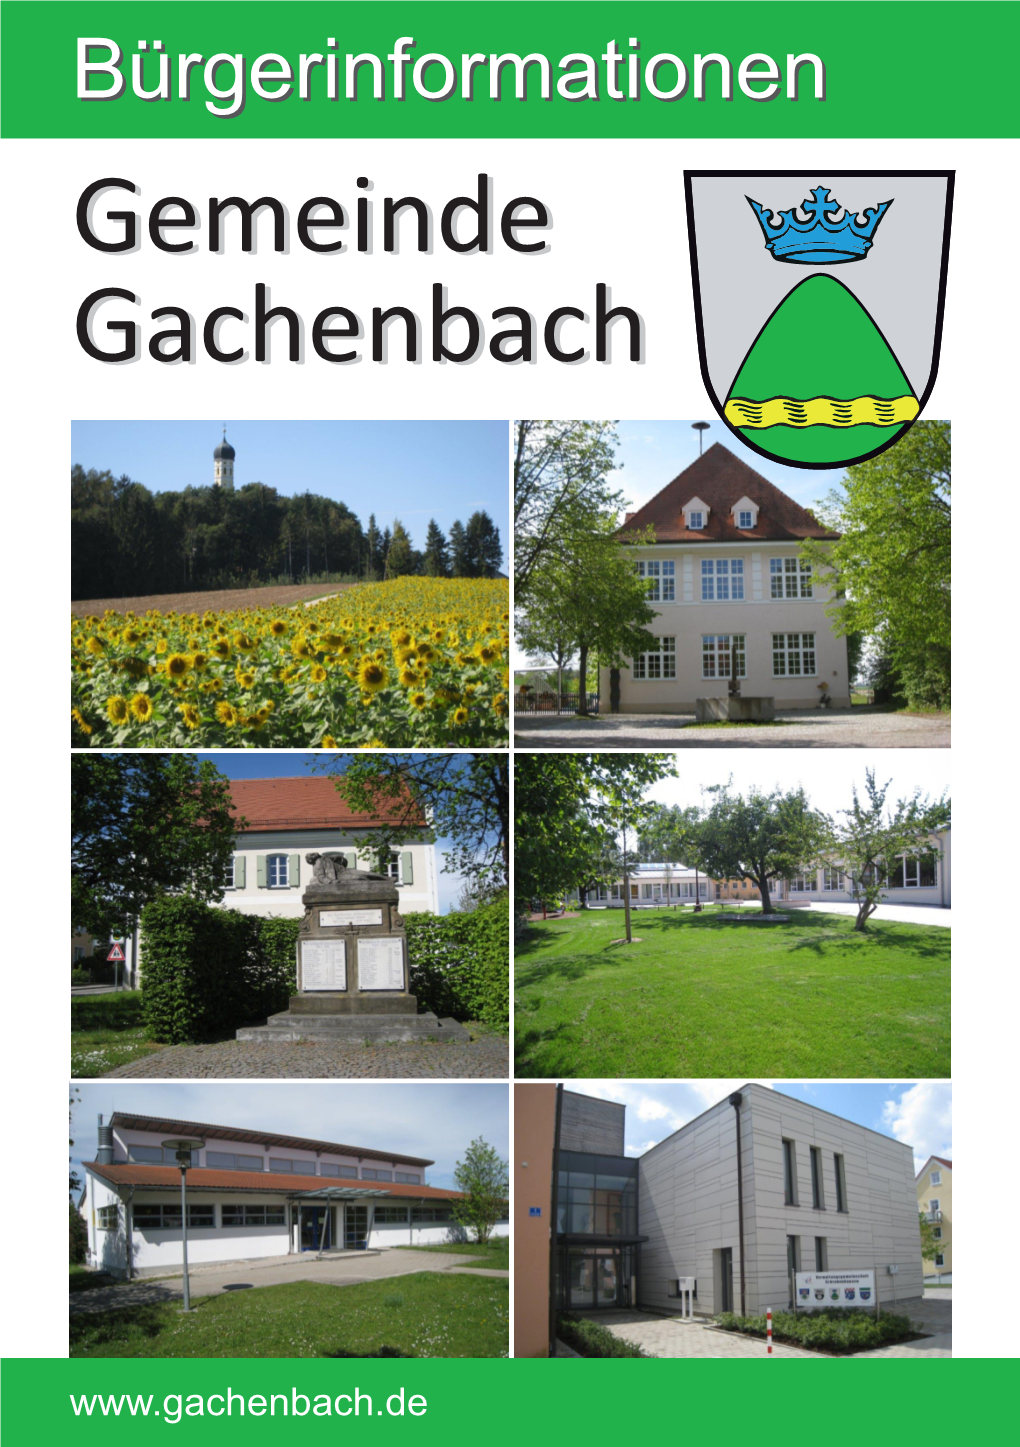 Bürgerinformationenbürgerinformationen Gemeindegemeinde Gachenbachgachenbach